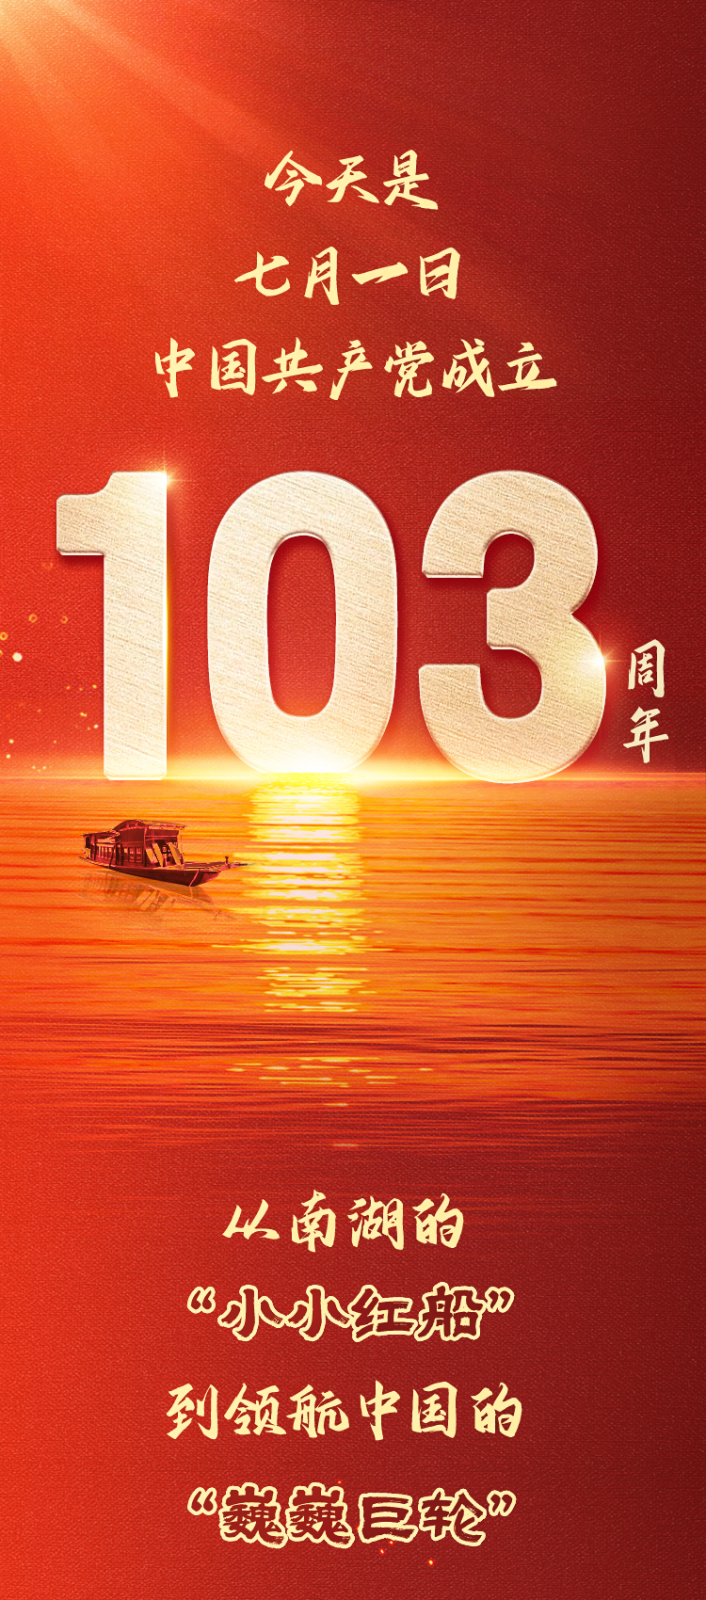 凝聚推进中国式现代化的磅礴力量——热烈庆祝中国共产党成立103周年！